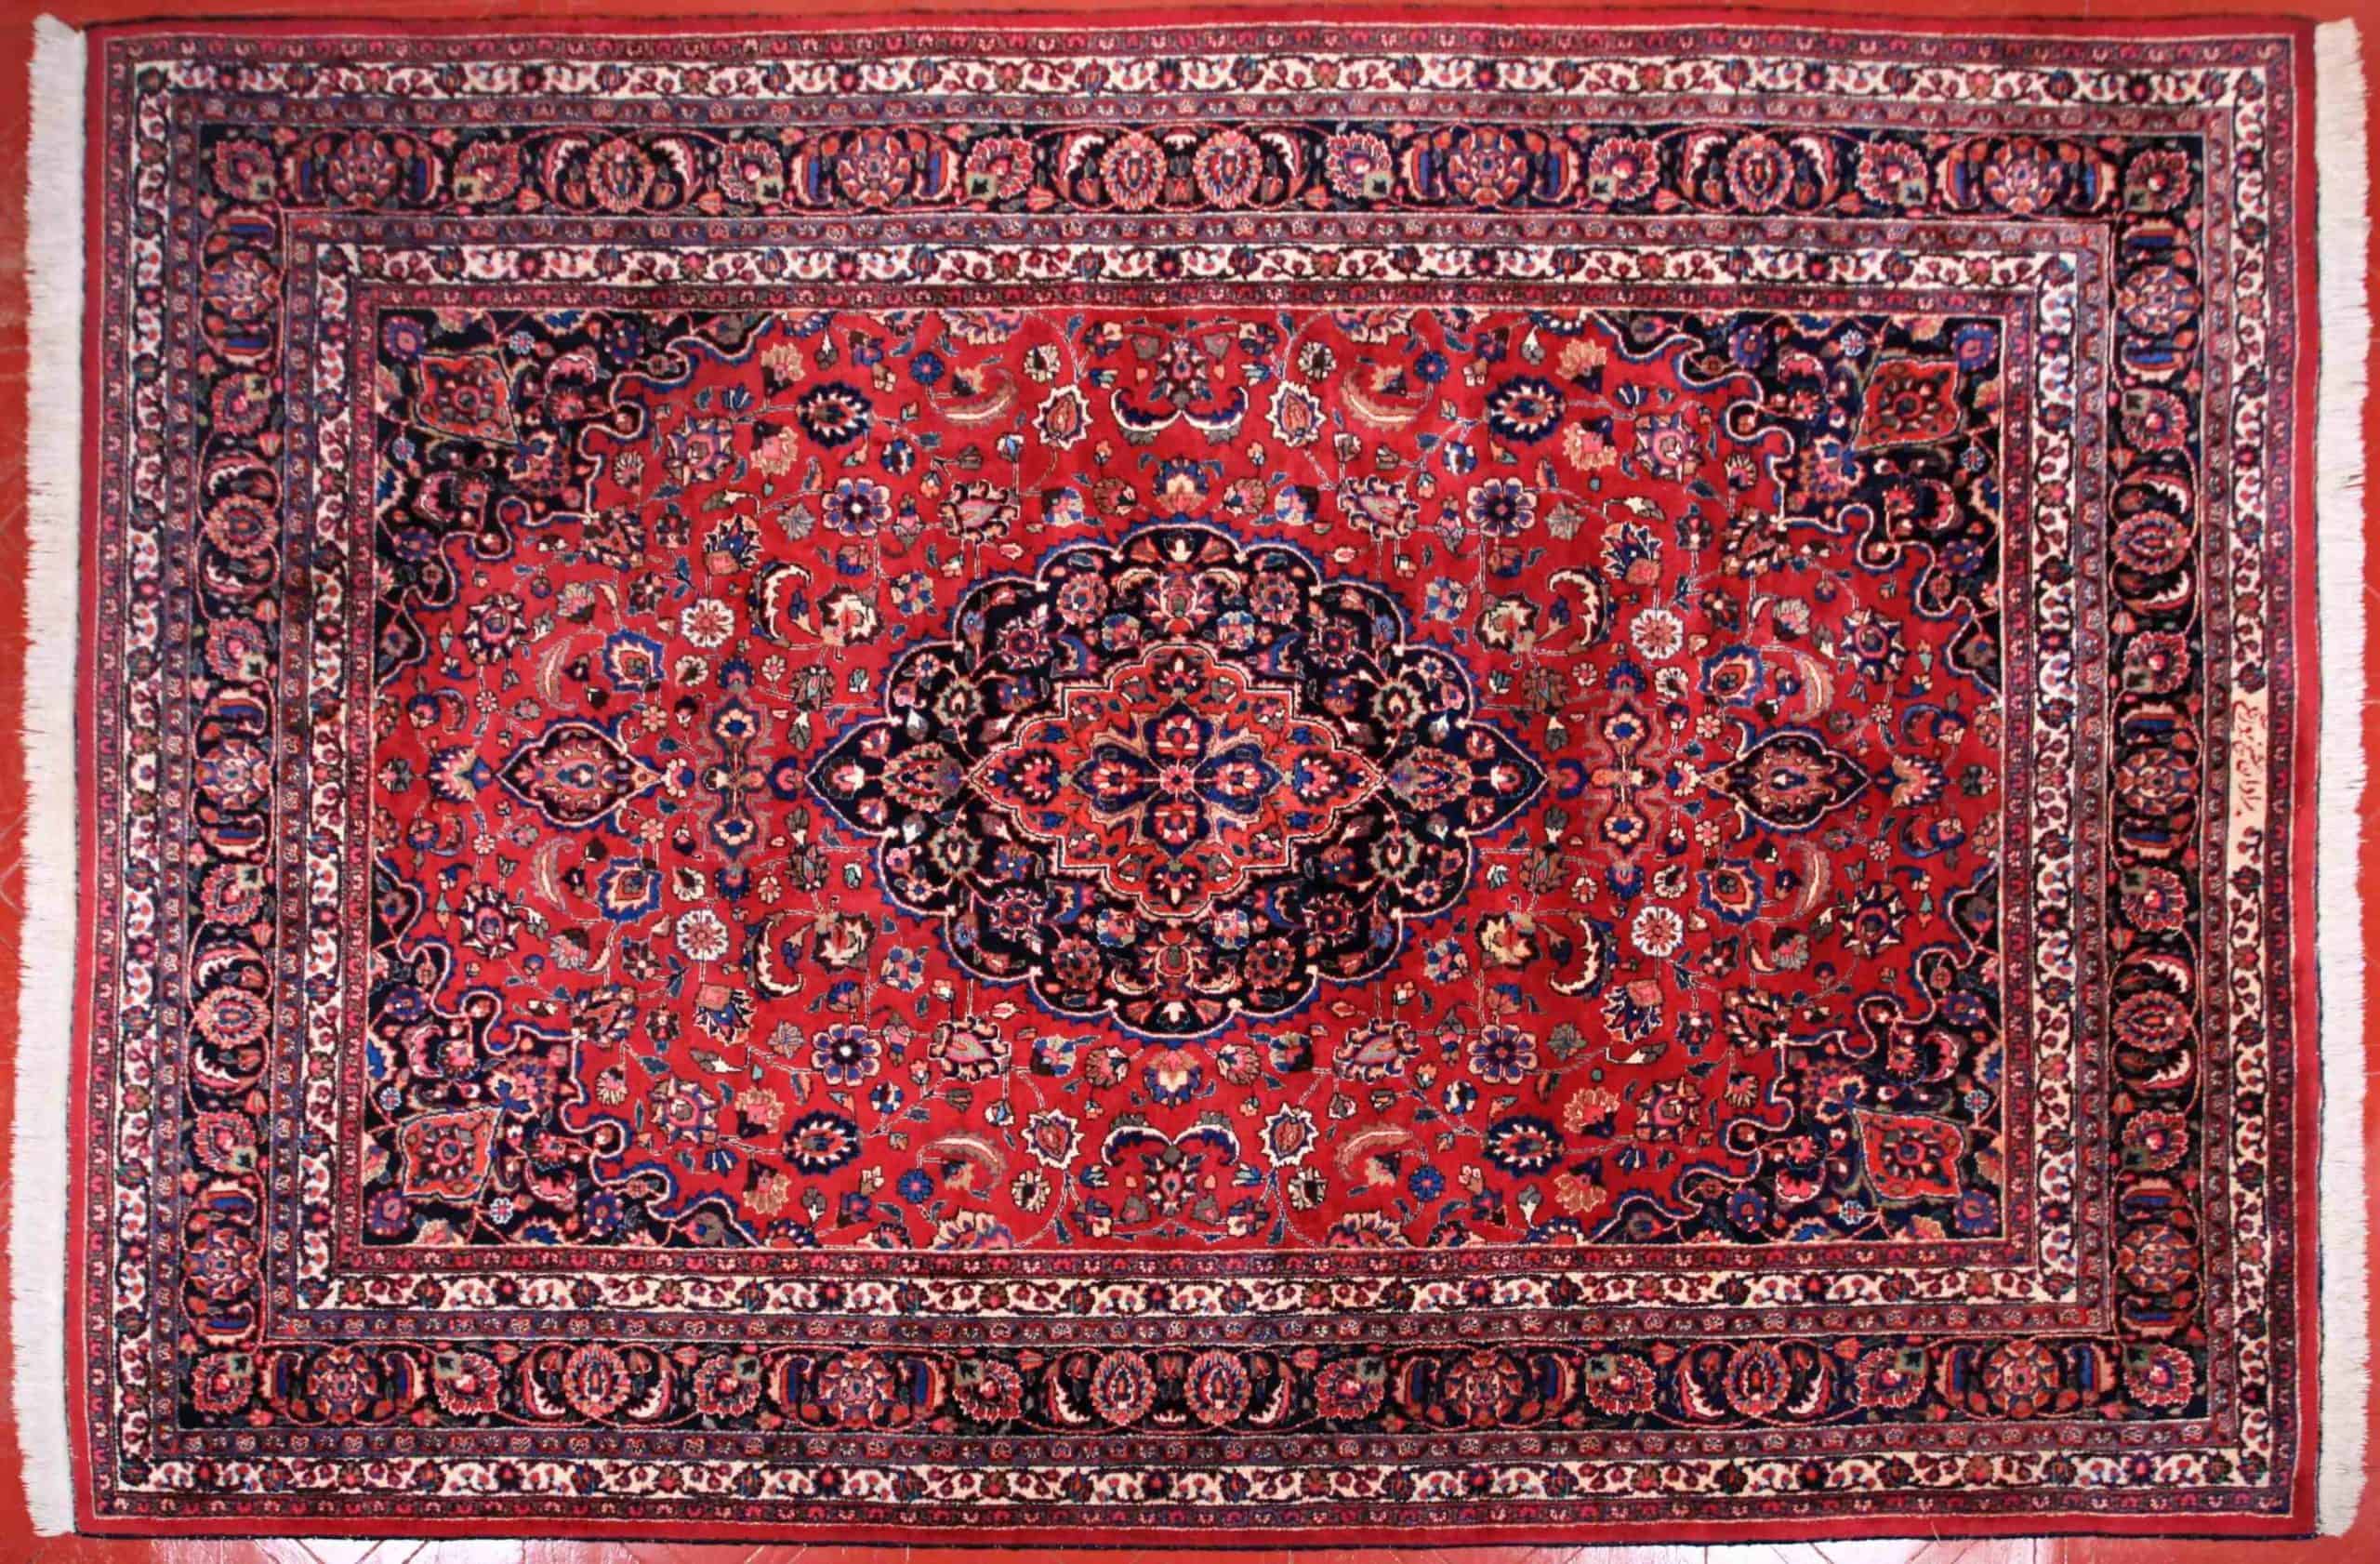 Perský koberec Meshed. Certifikát. 355 x 250 cm. Signovaný